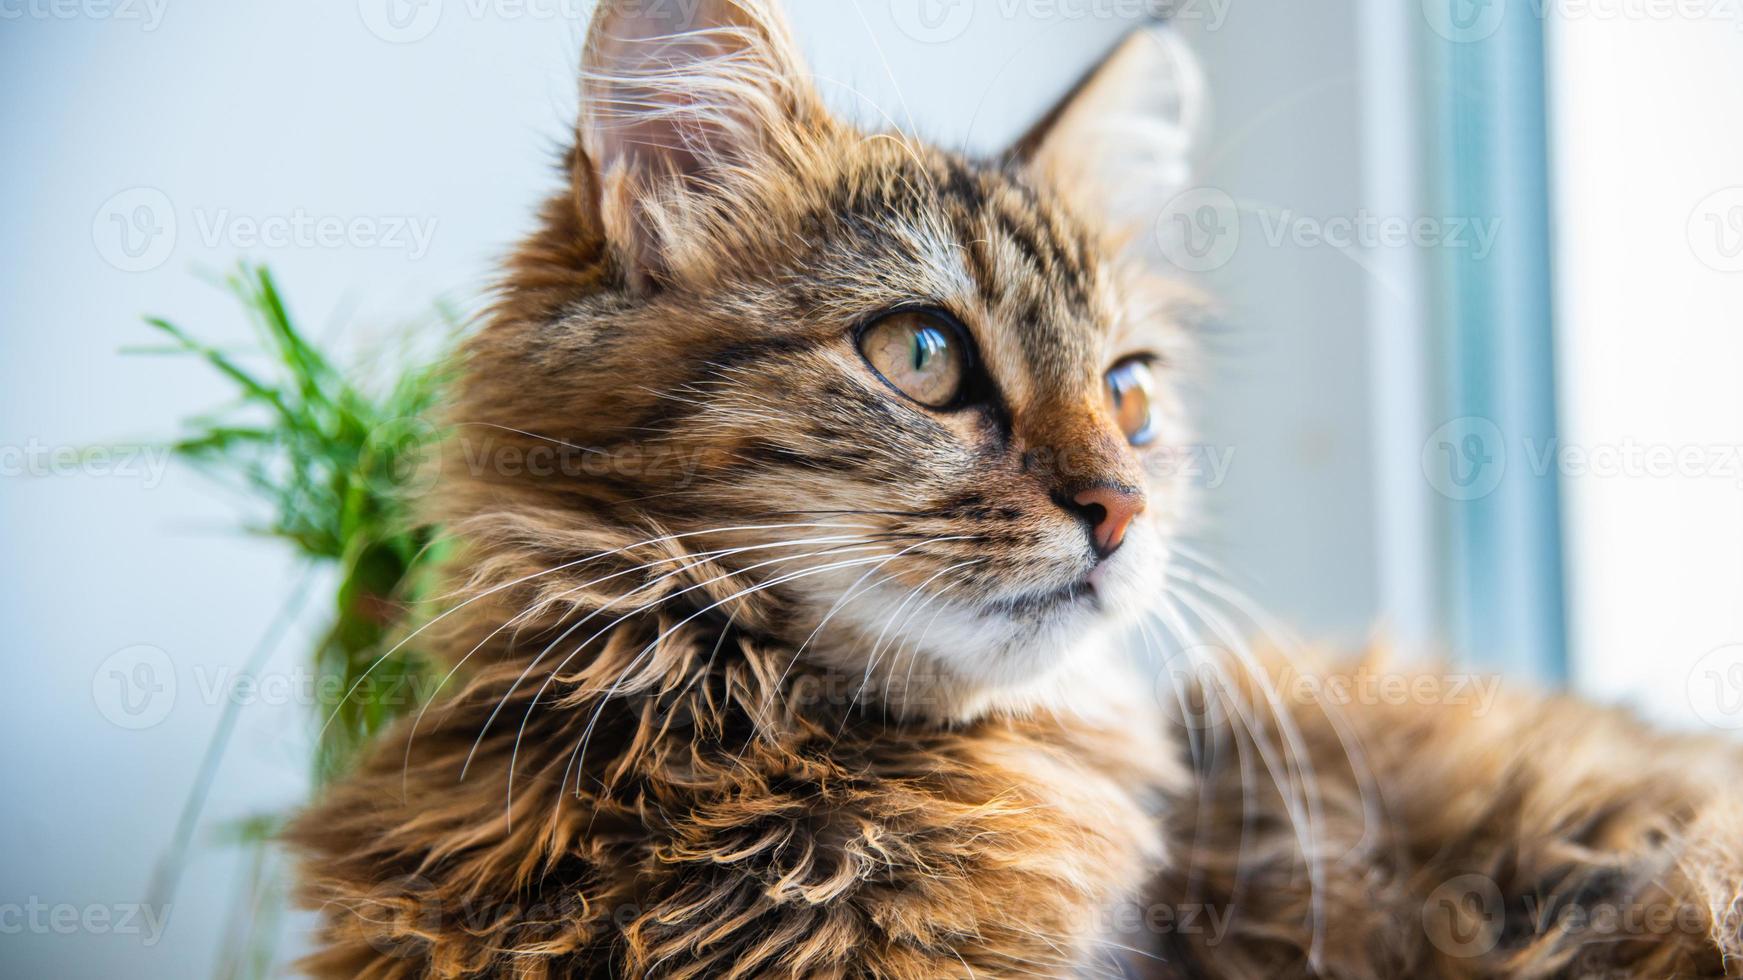 portrait en gros plan d'un chat domestique à rayures grises.image pour les cliniques vétérinaires, sites sur les chats, pour la nourriture pour chats. photo